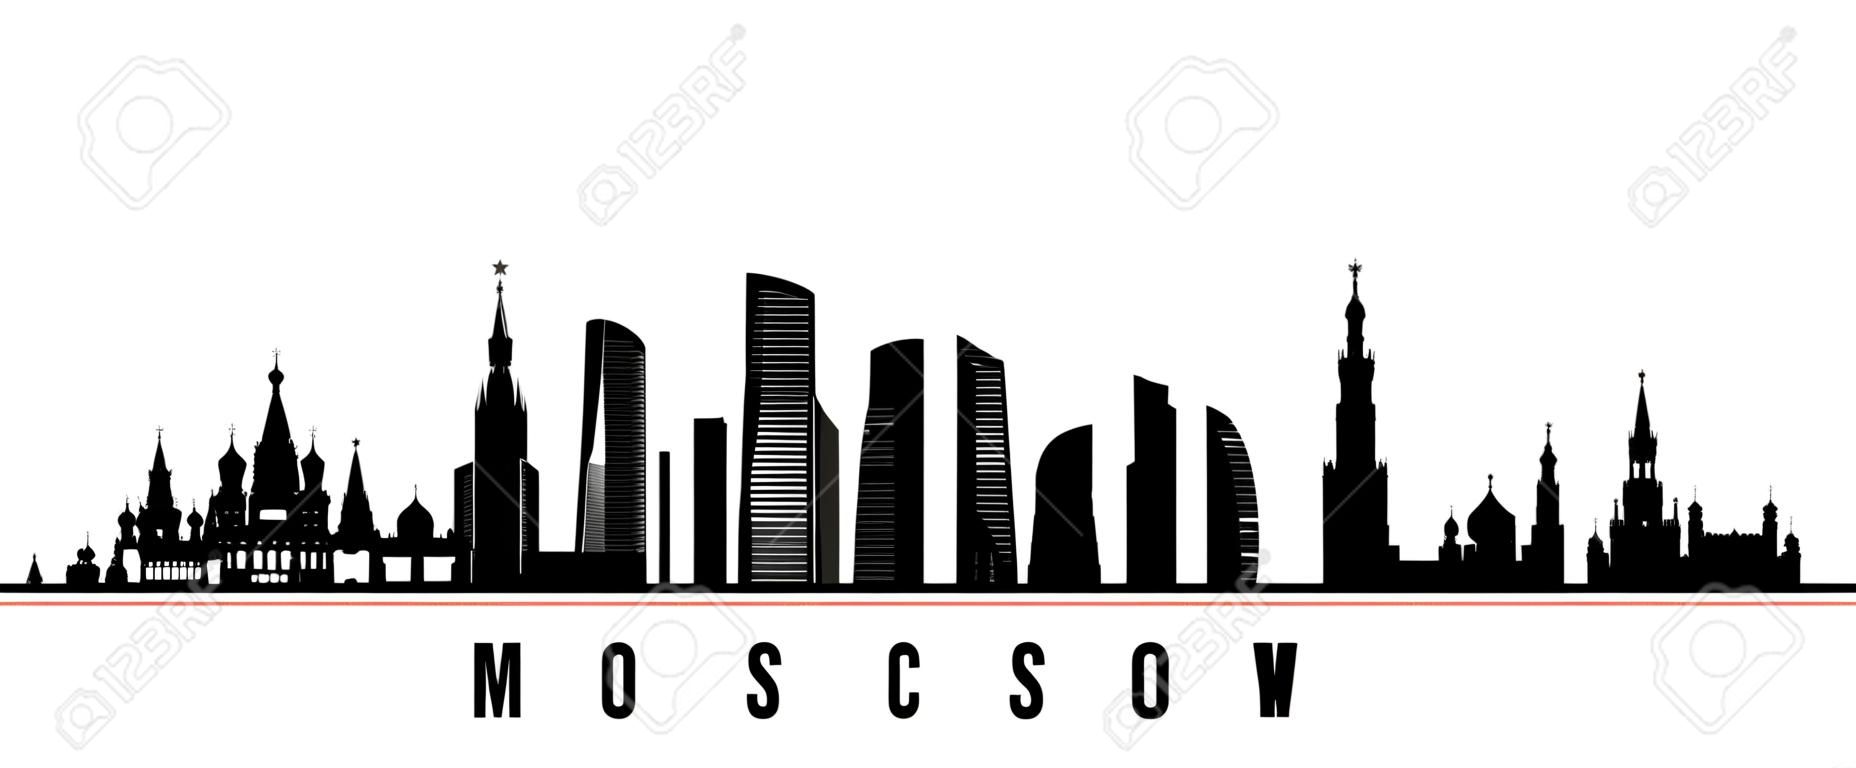 Insegna orizzontale dell'orizzonte della città di Mosca. Siluetta in bianco e nero della città di Mosca, Russia. Modello vettoriale per il tuo design.